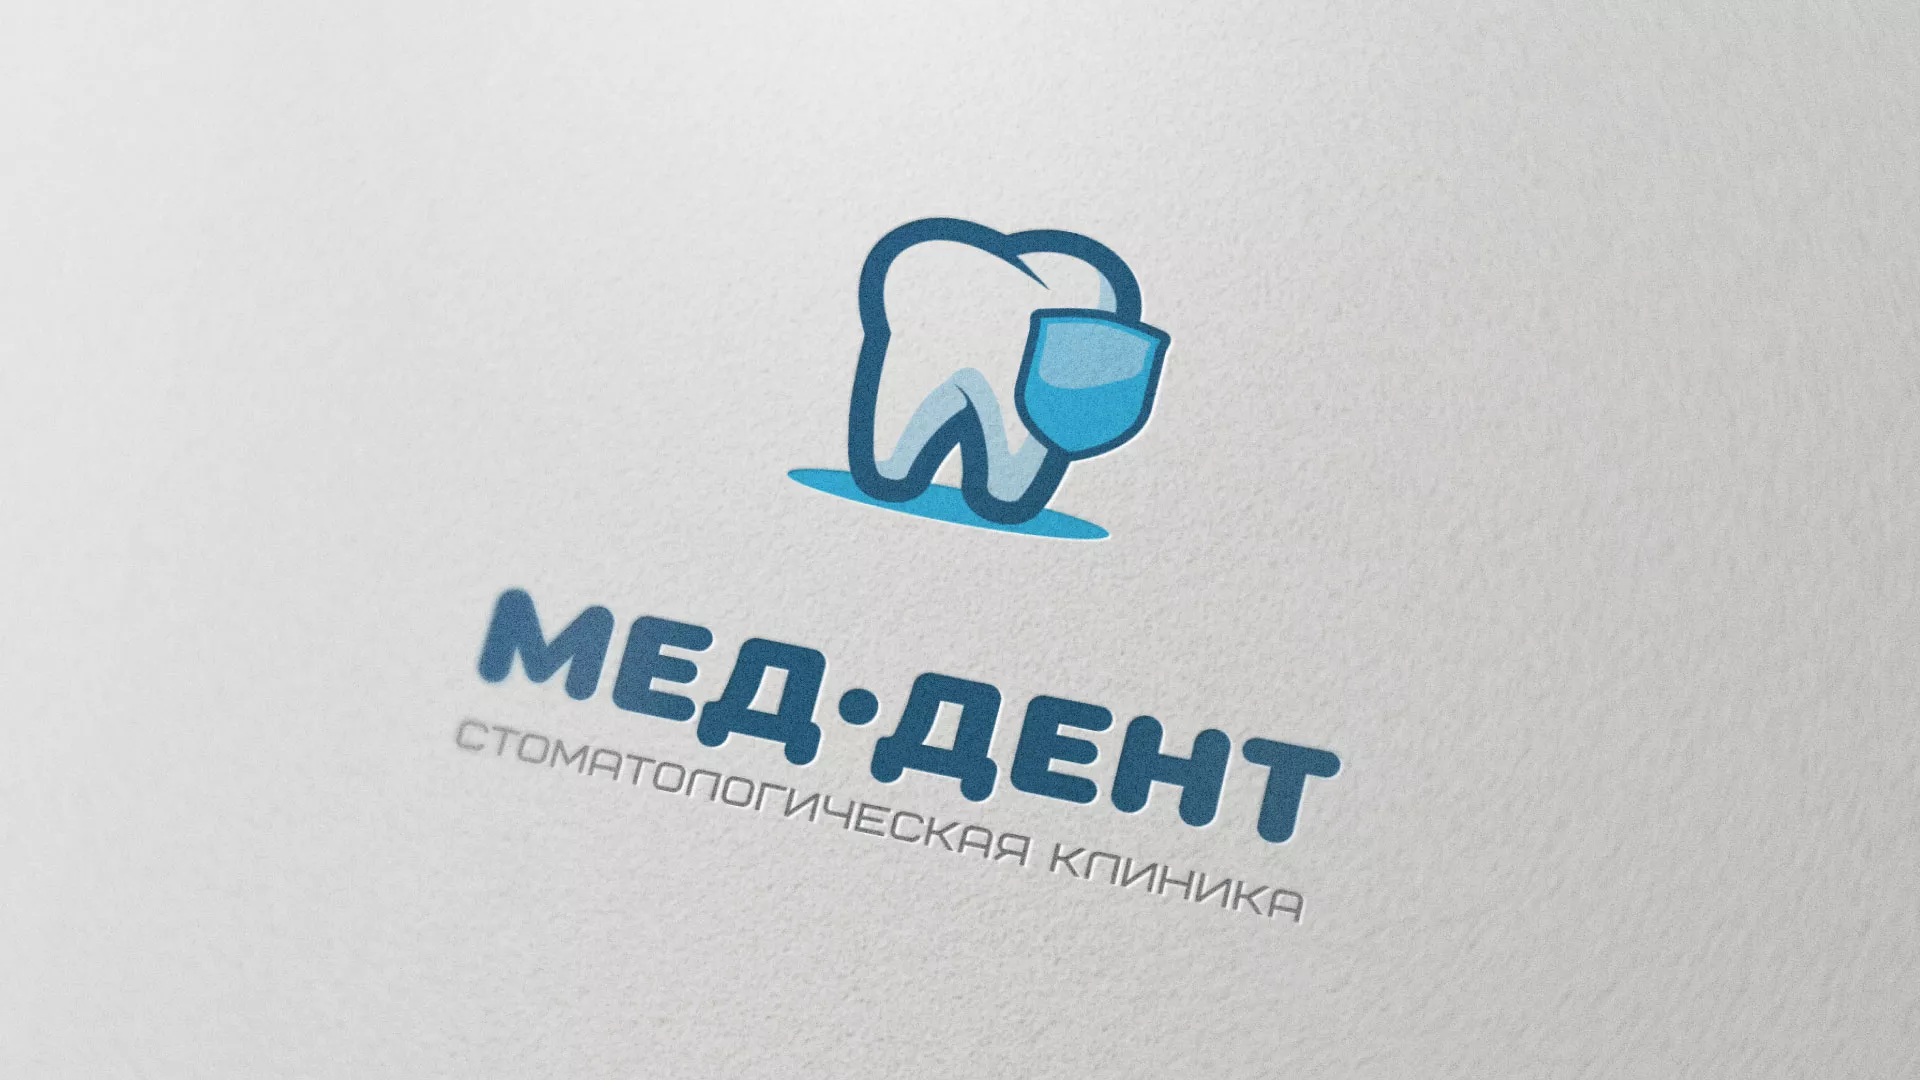 Разработка логотипа стоматологической клиники «МЕД-ДЕНТ» в Белой Калитве